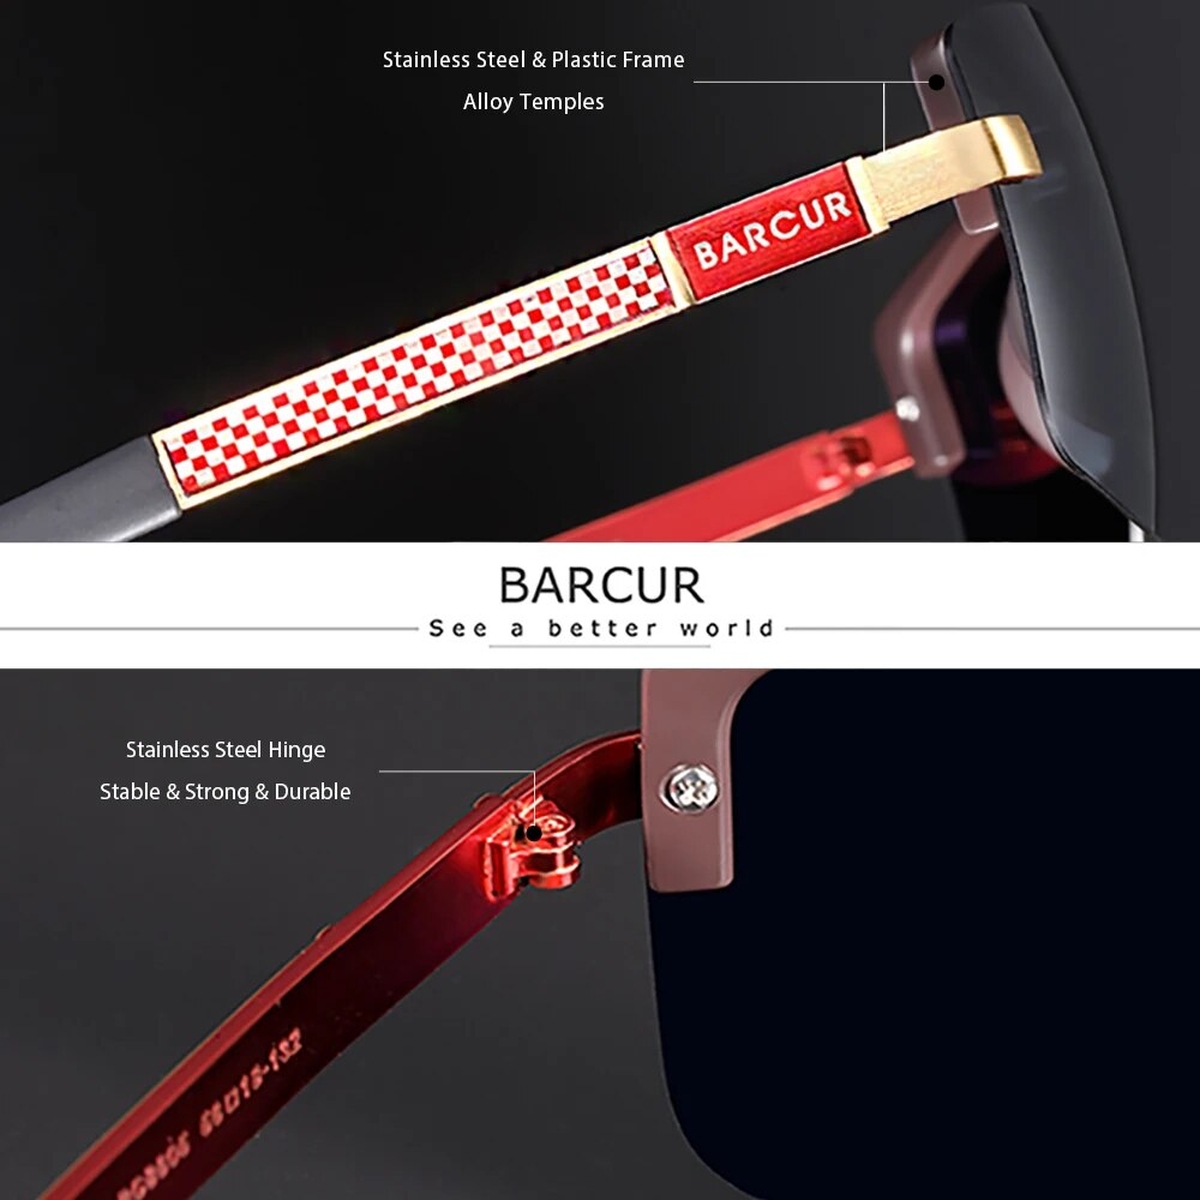 Óculos de sol masculinos BARCUR estilo casual esportivo lentes polarizados  antirreflexo com proteção UV400 e armação de alumínio e magnésio